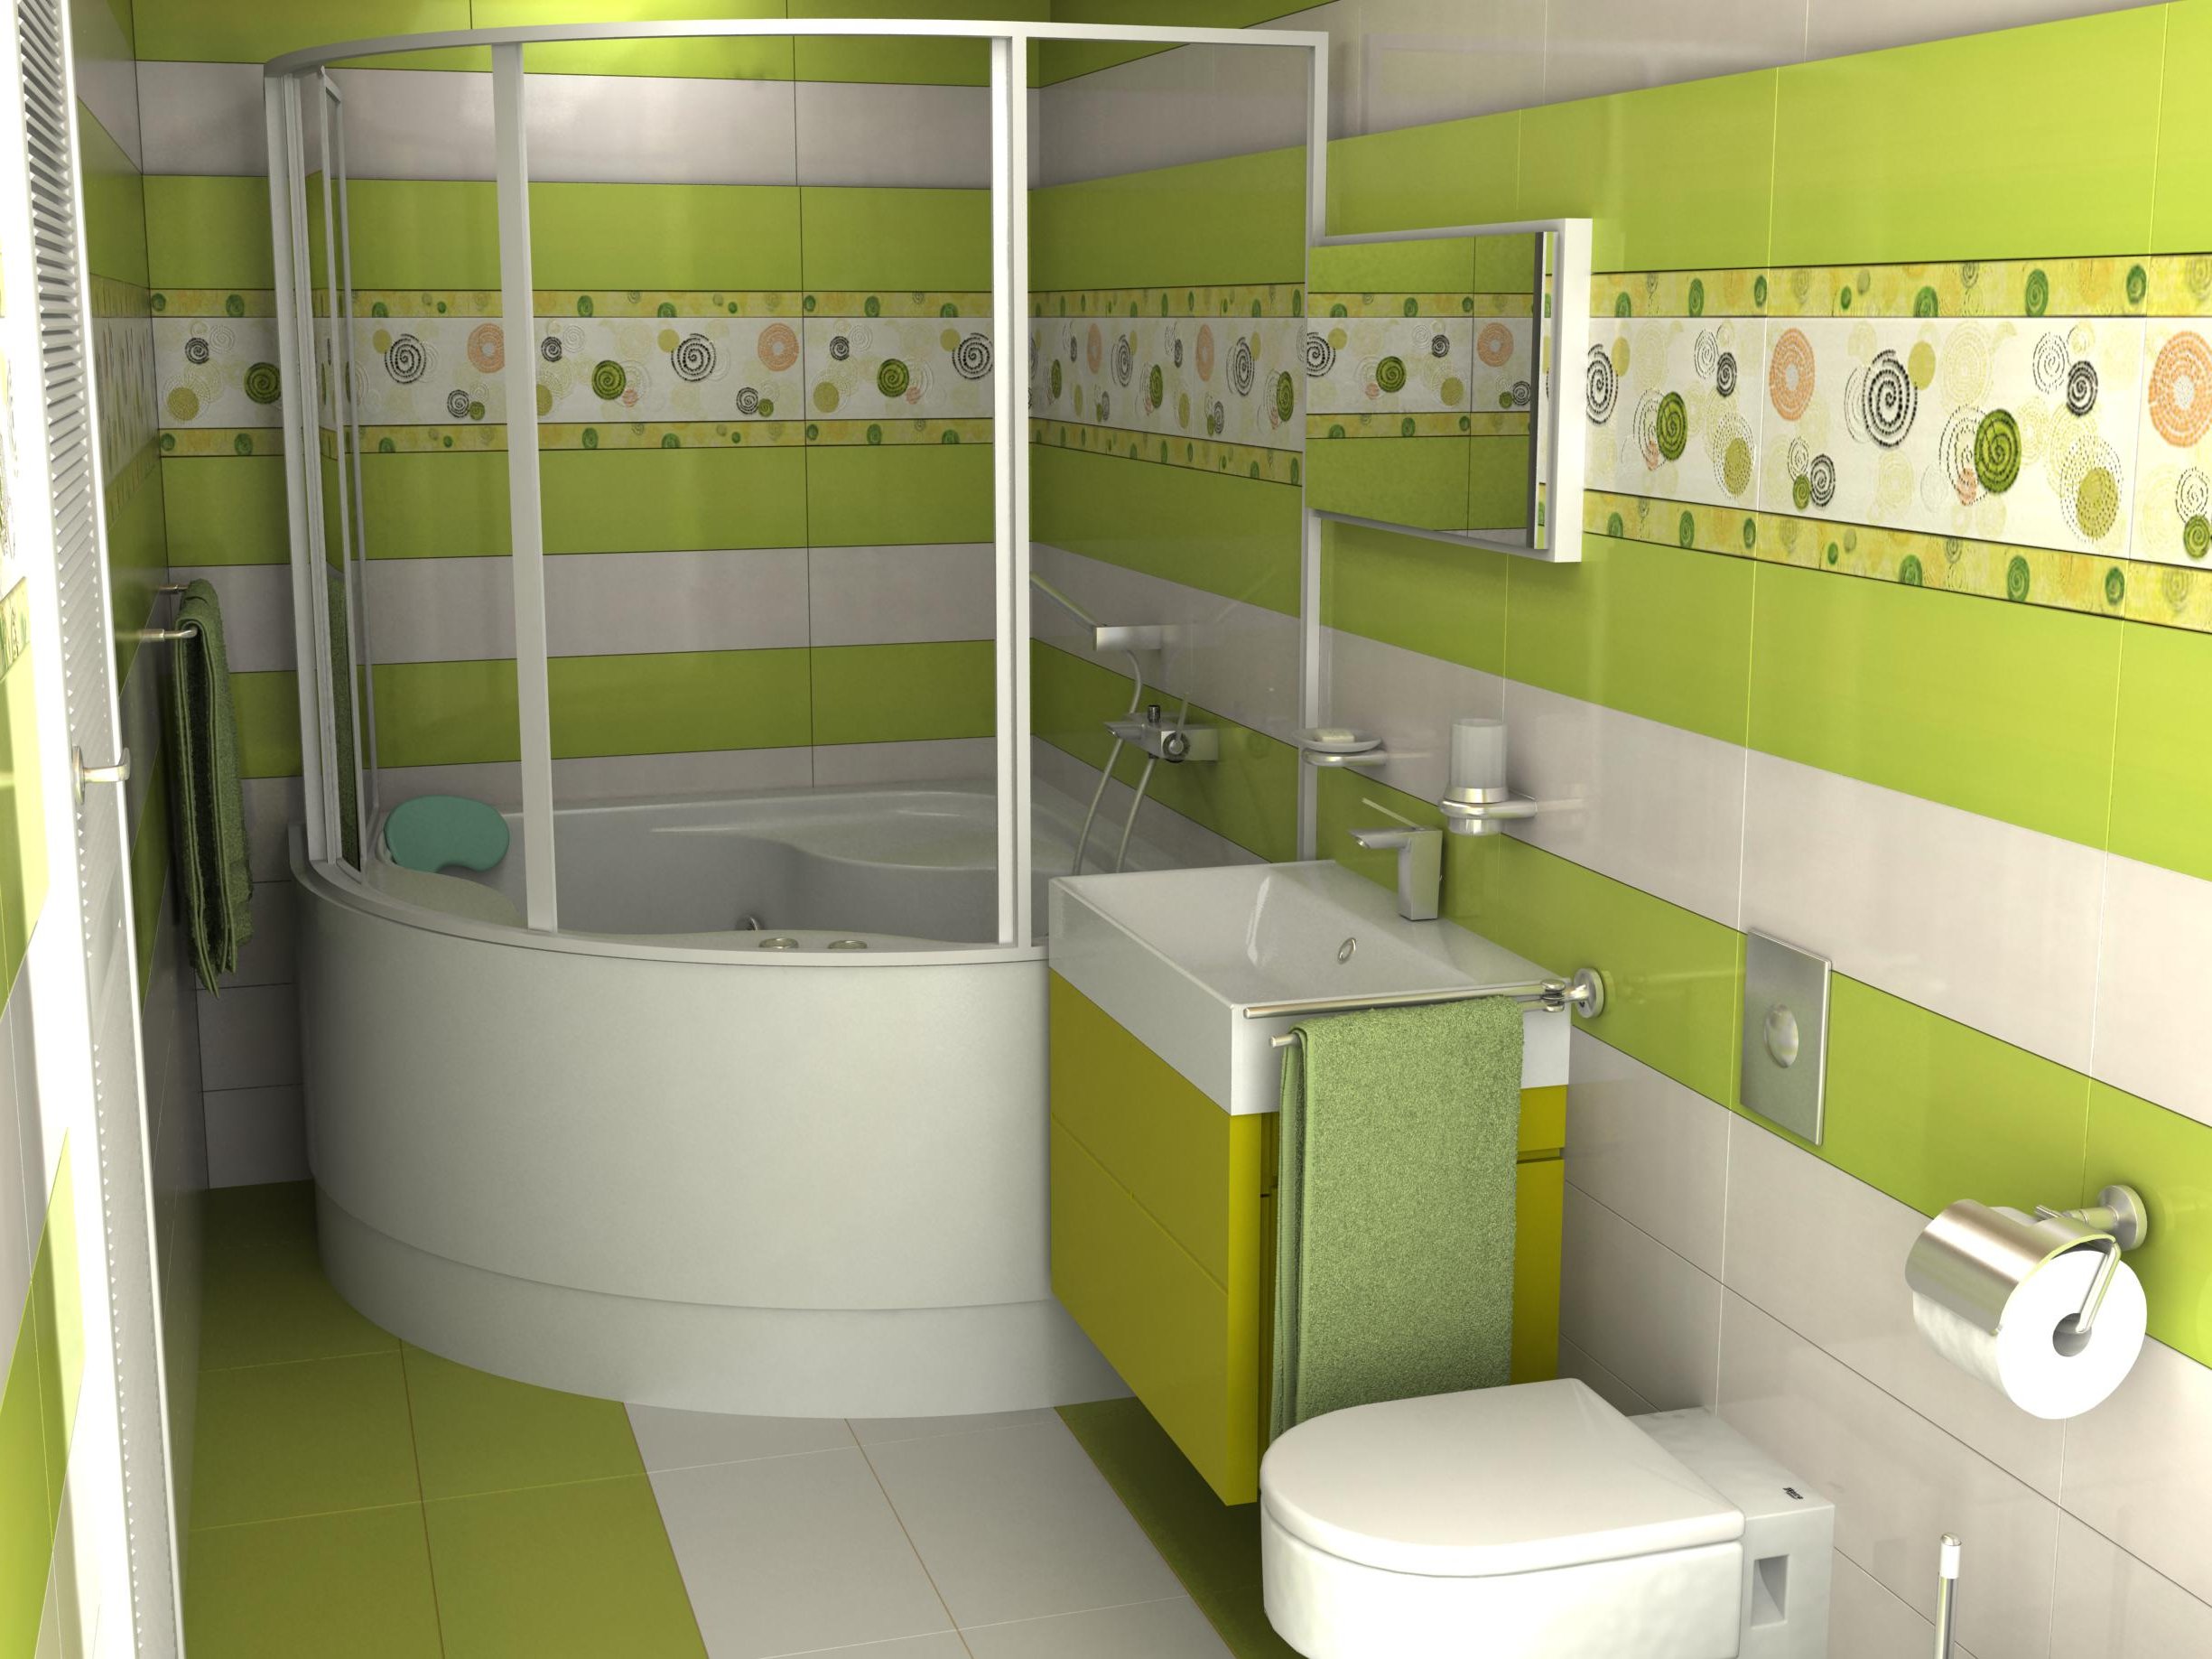 Плитка в маленькой ванне фото. Плитка для маленькой ванной комнаты. Ванная в зеленых тонах. Салатовая ванная. Зелёная плитка для ванной комнаты.